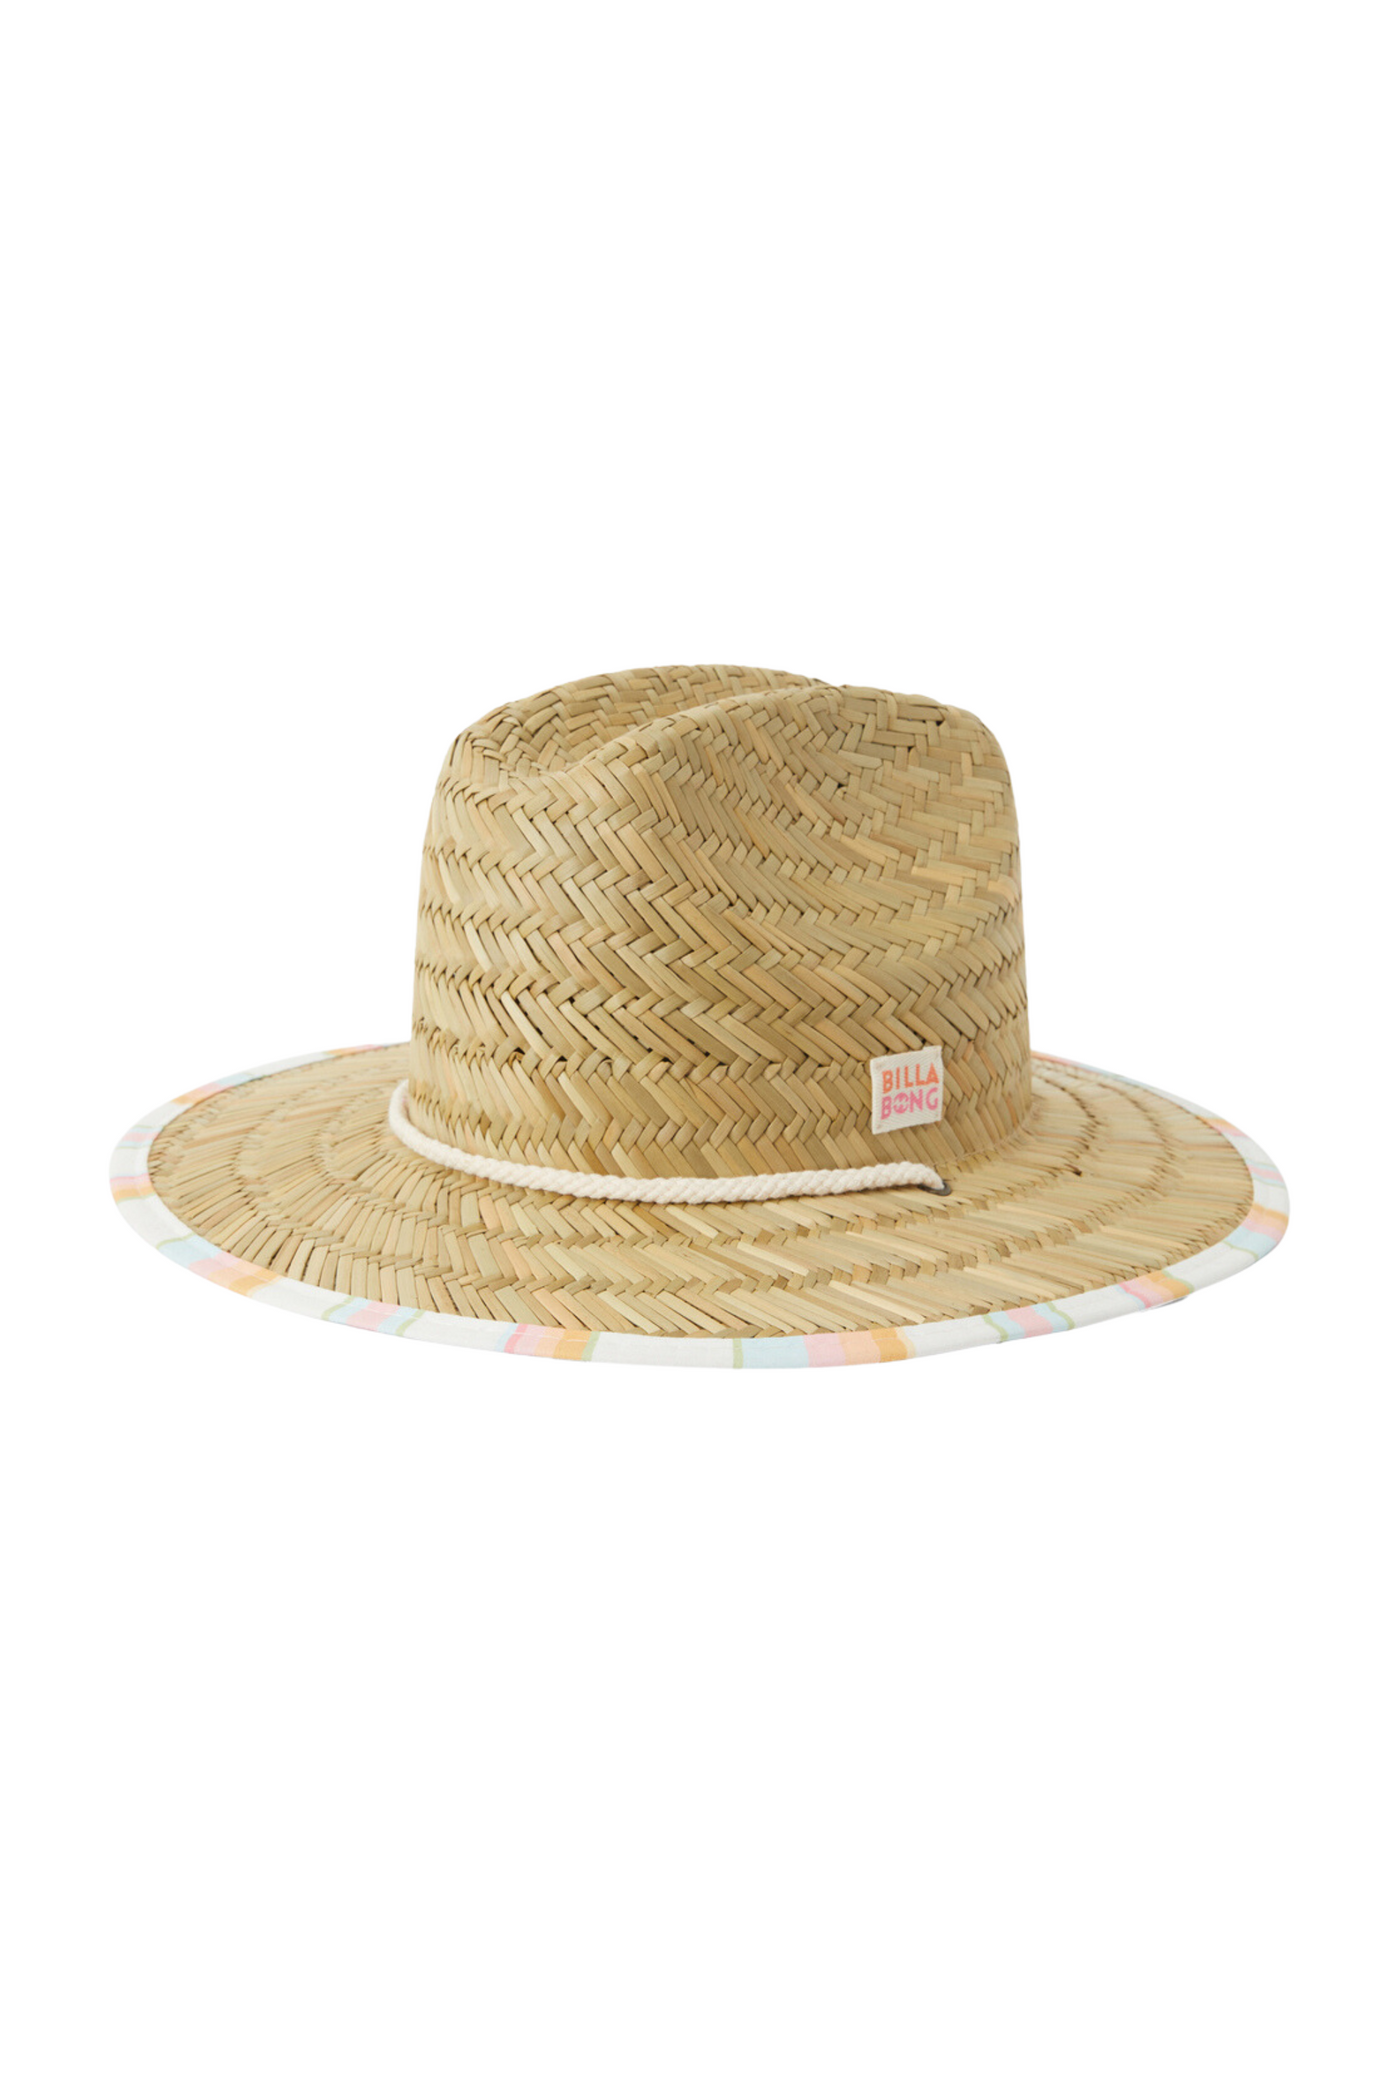 Girls' Beach Dayz Lifeguard Hat